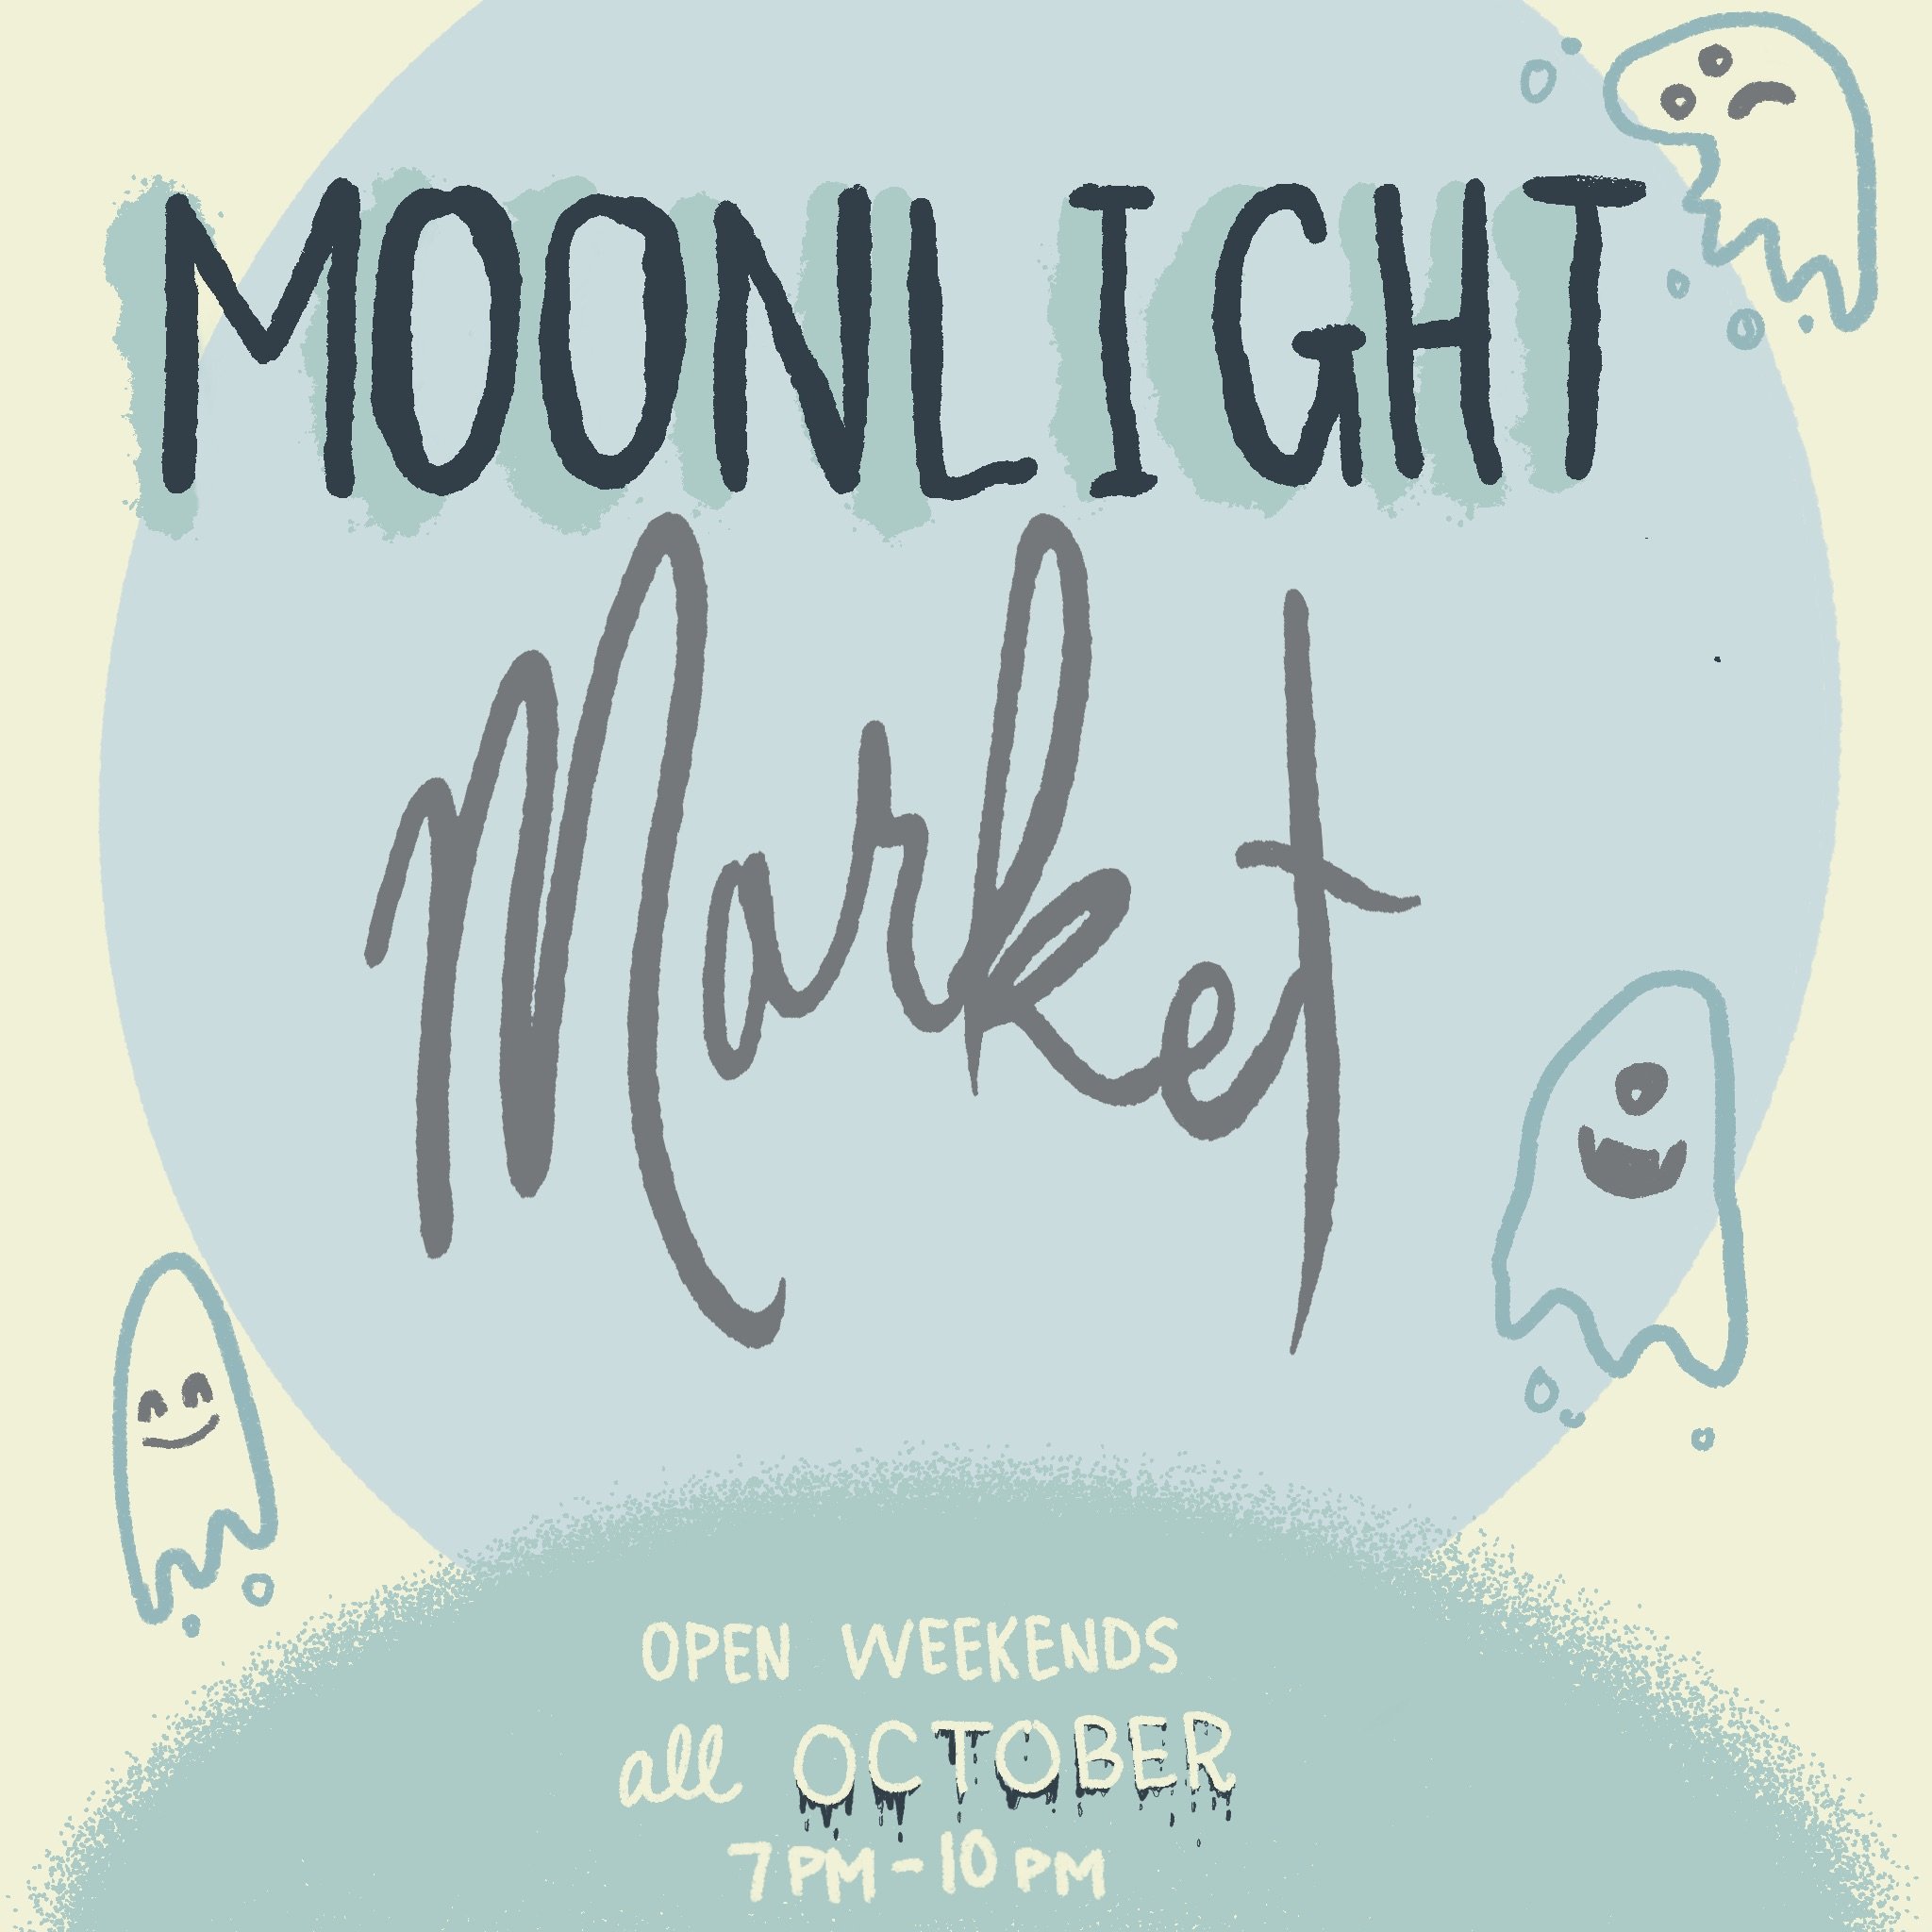 Flyer Design: Moonlight Market